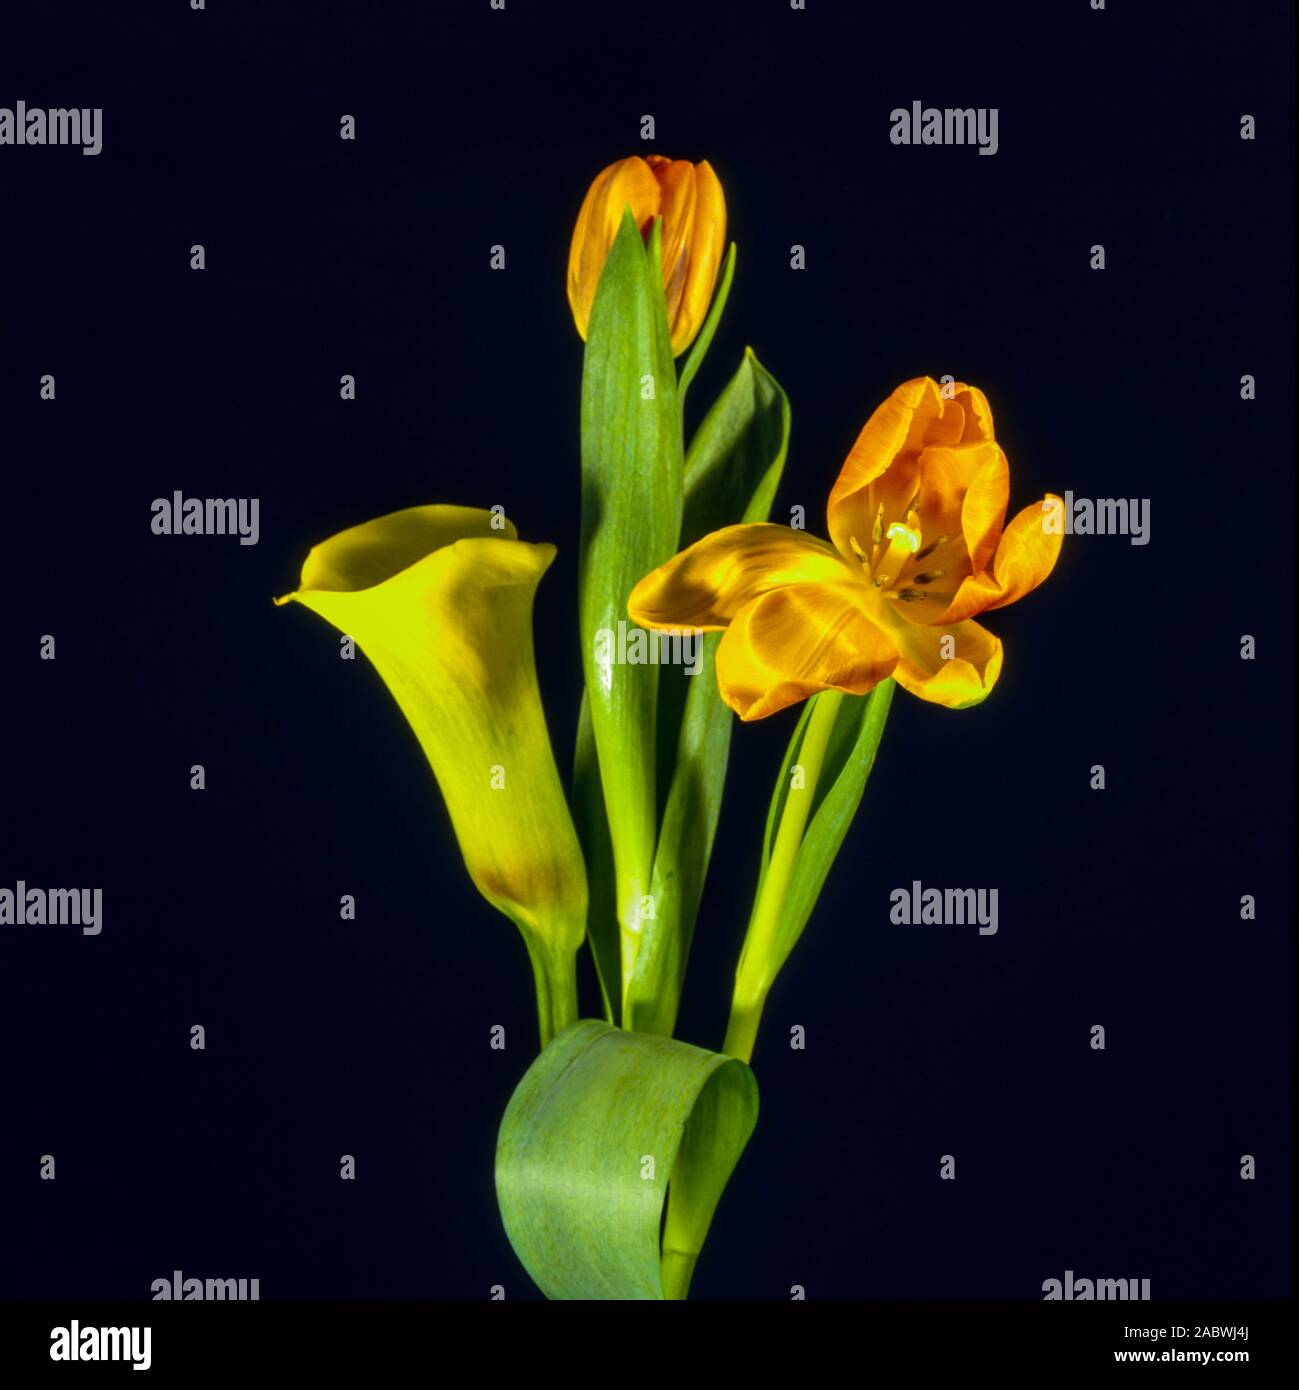 gelbe zantedeschia und orangefarbene tulpen mit tulpenblaettern; dunkler hintergrund. yellow zantedeschia and orange tulips together with tulip-leaf; Stock Photo